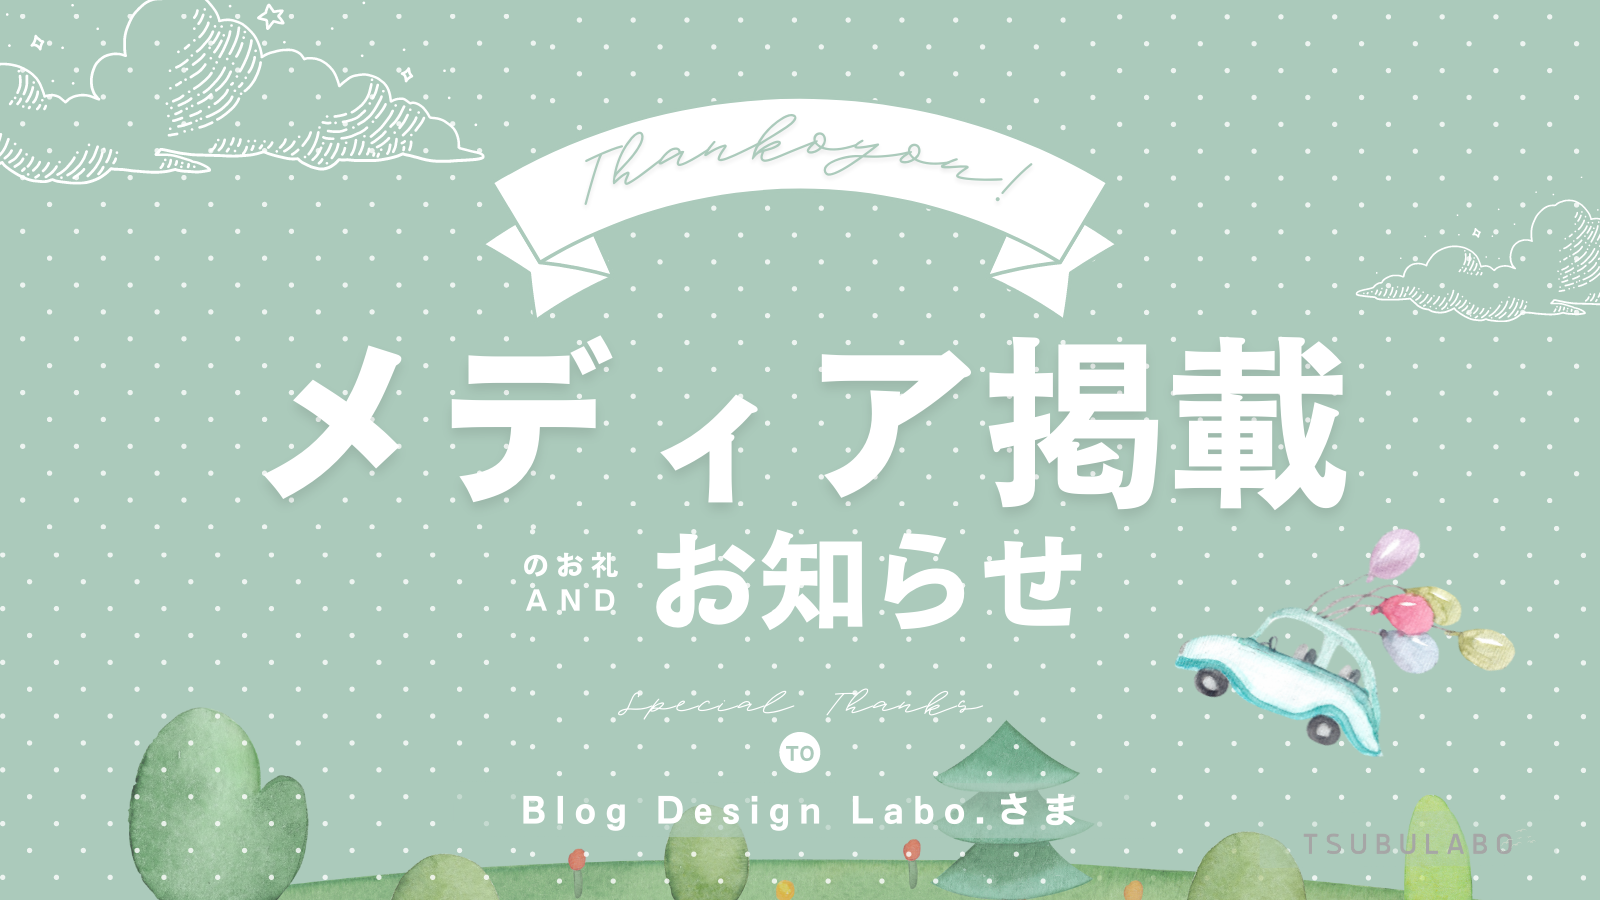 「Blog Design Lab.」様にご掲載いただきました